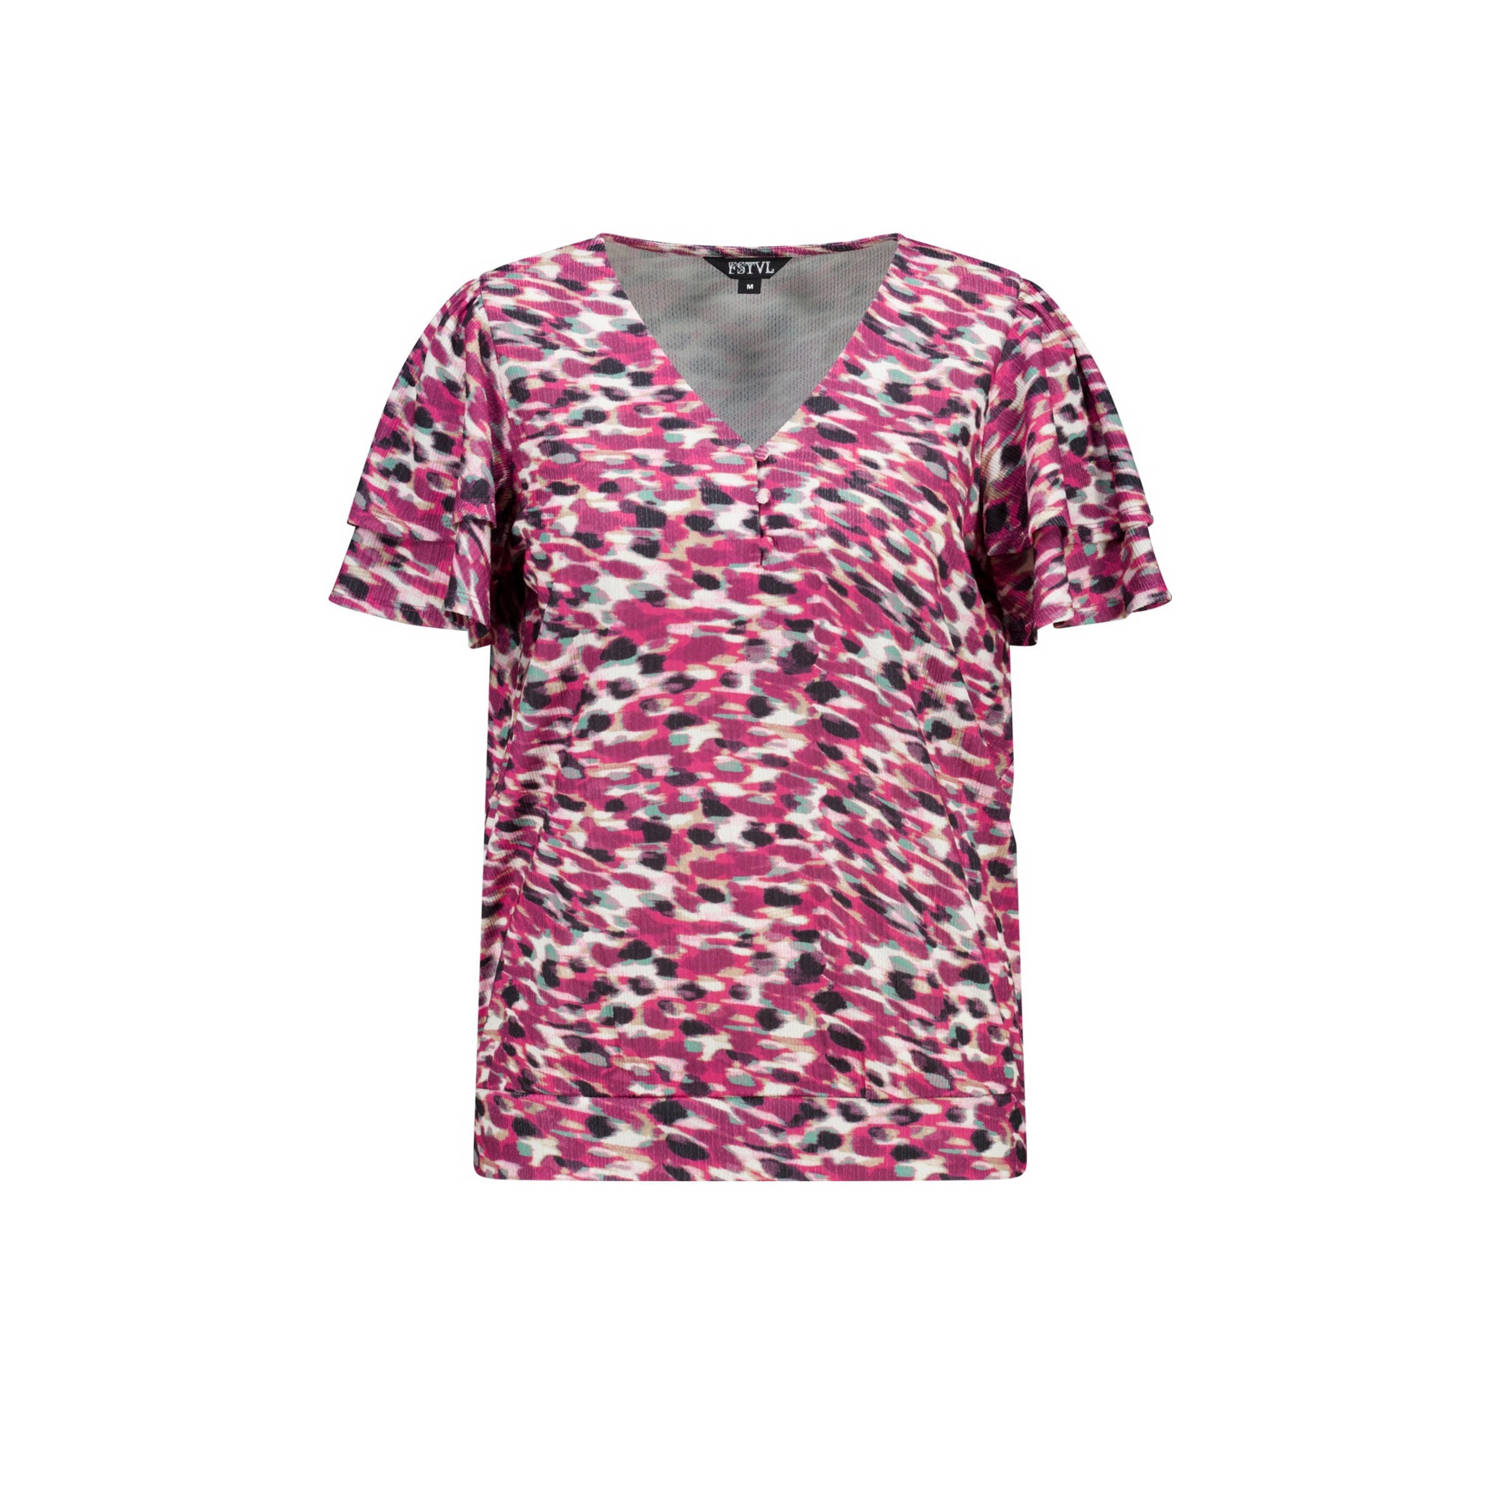 MS Mode blousetop met all over print en ruches roze zwart ecru